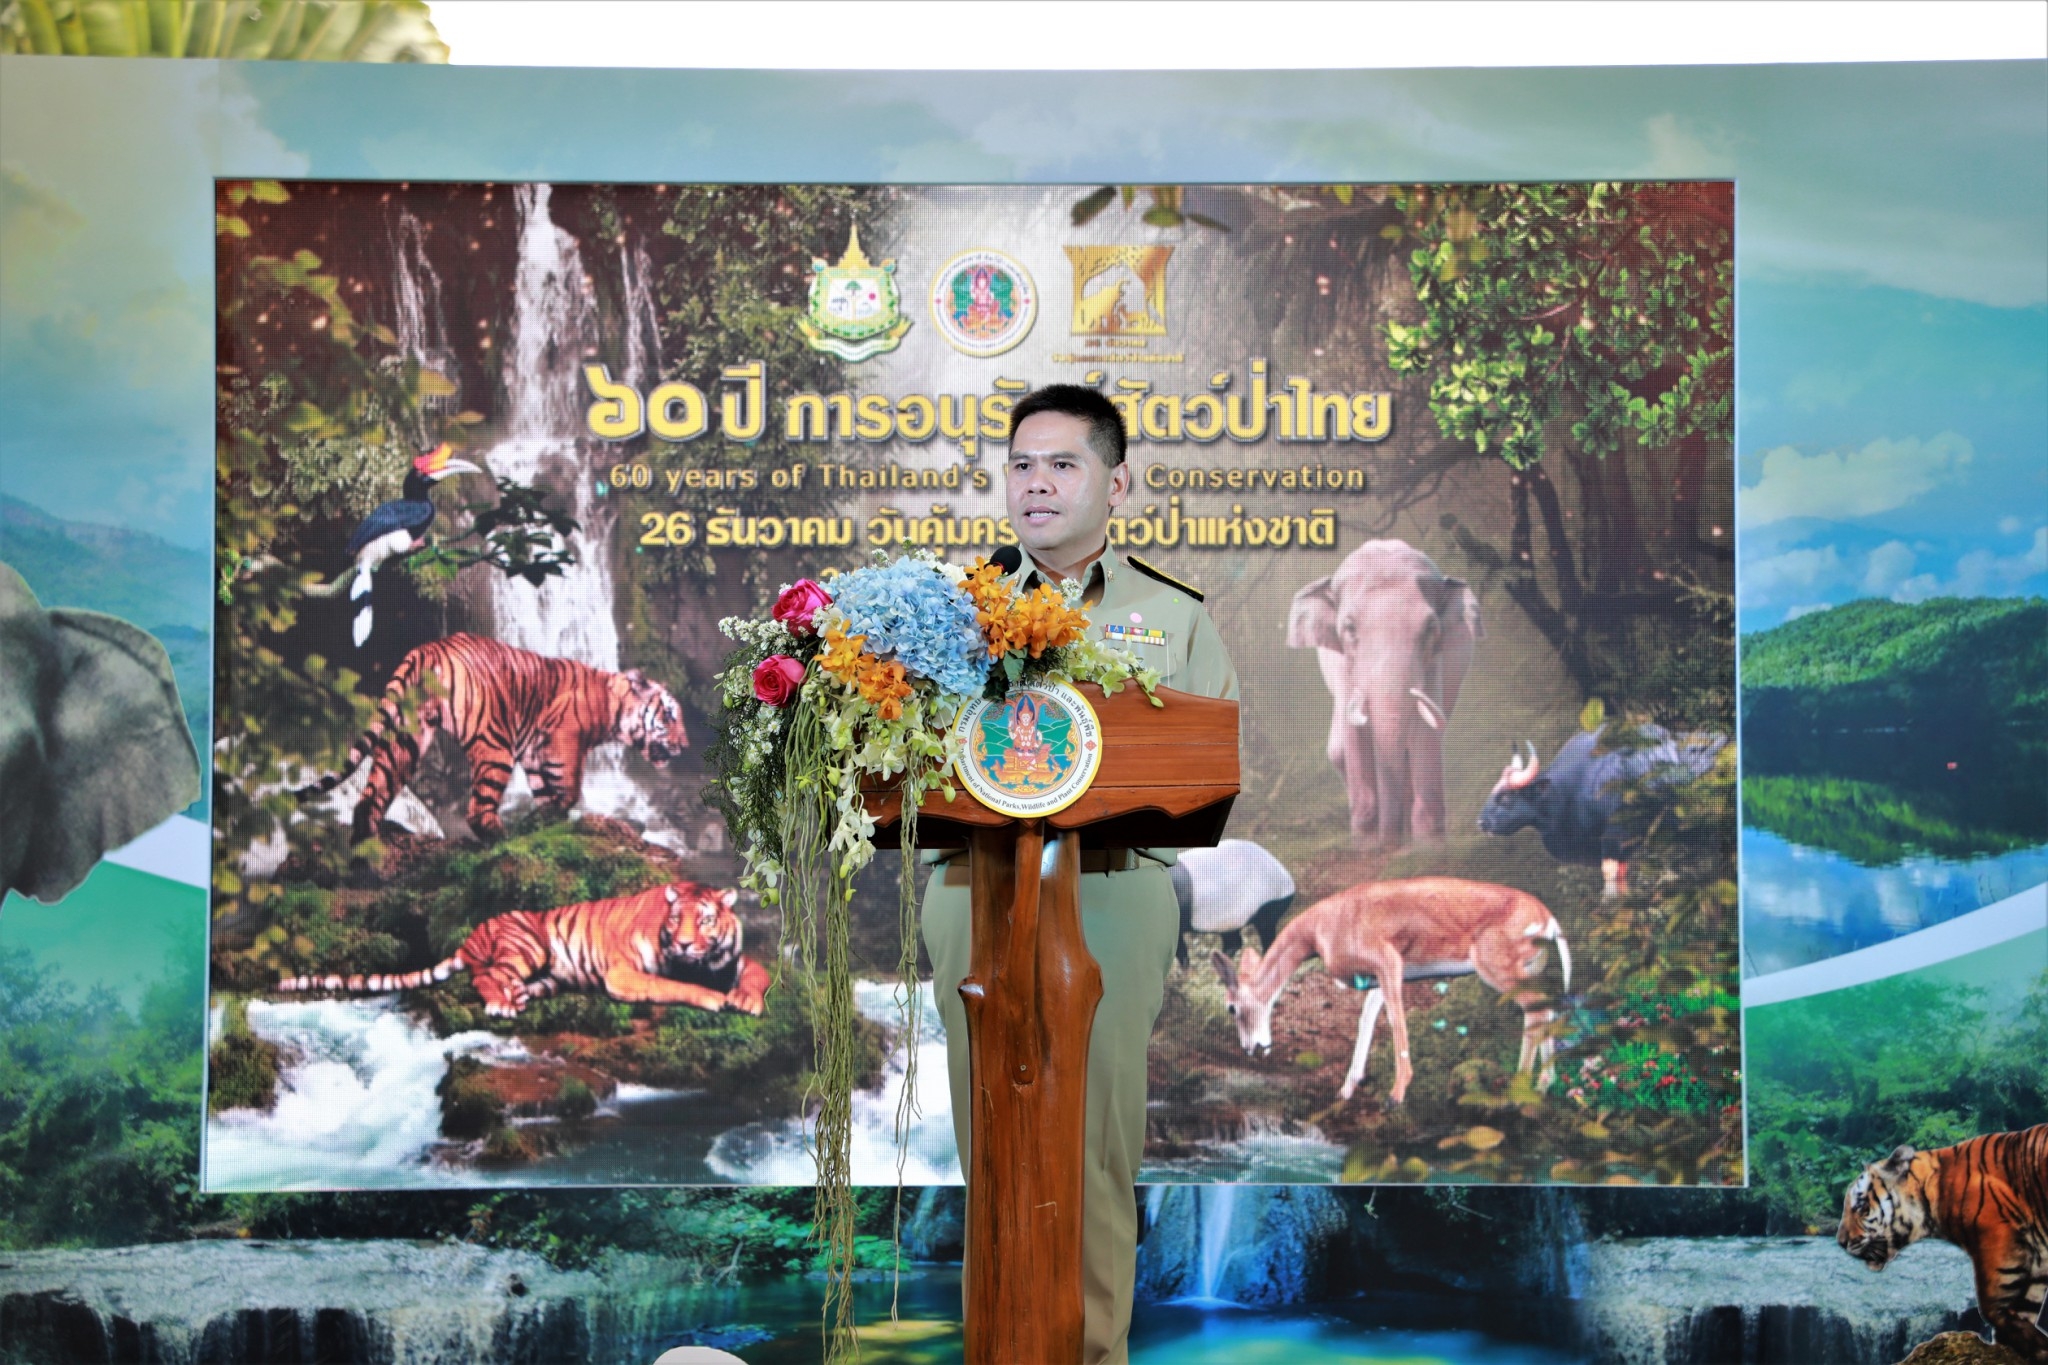 นายวราวุธ ศิลปอาชา รัฐมนตรีว่าการกระทรวงทรัพยากรธรรมชาติและสิ่งแวดล้อม เป็นประธานเปิดงานวันคุ้มครองสัตว์ป่าแห่งชาติ ประจำปี 2563